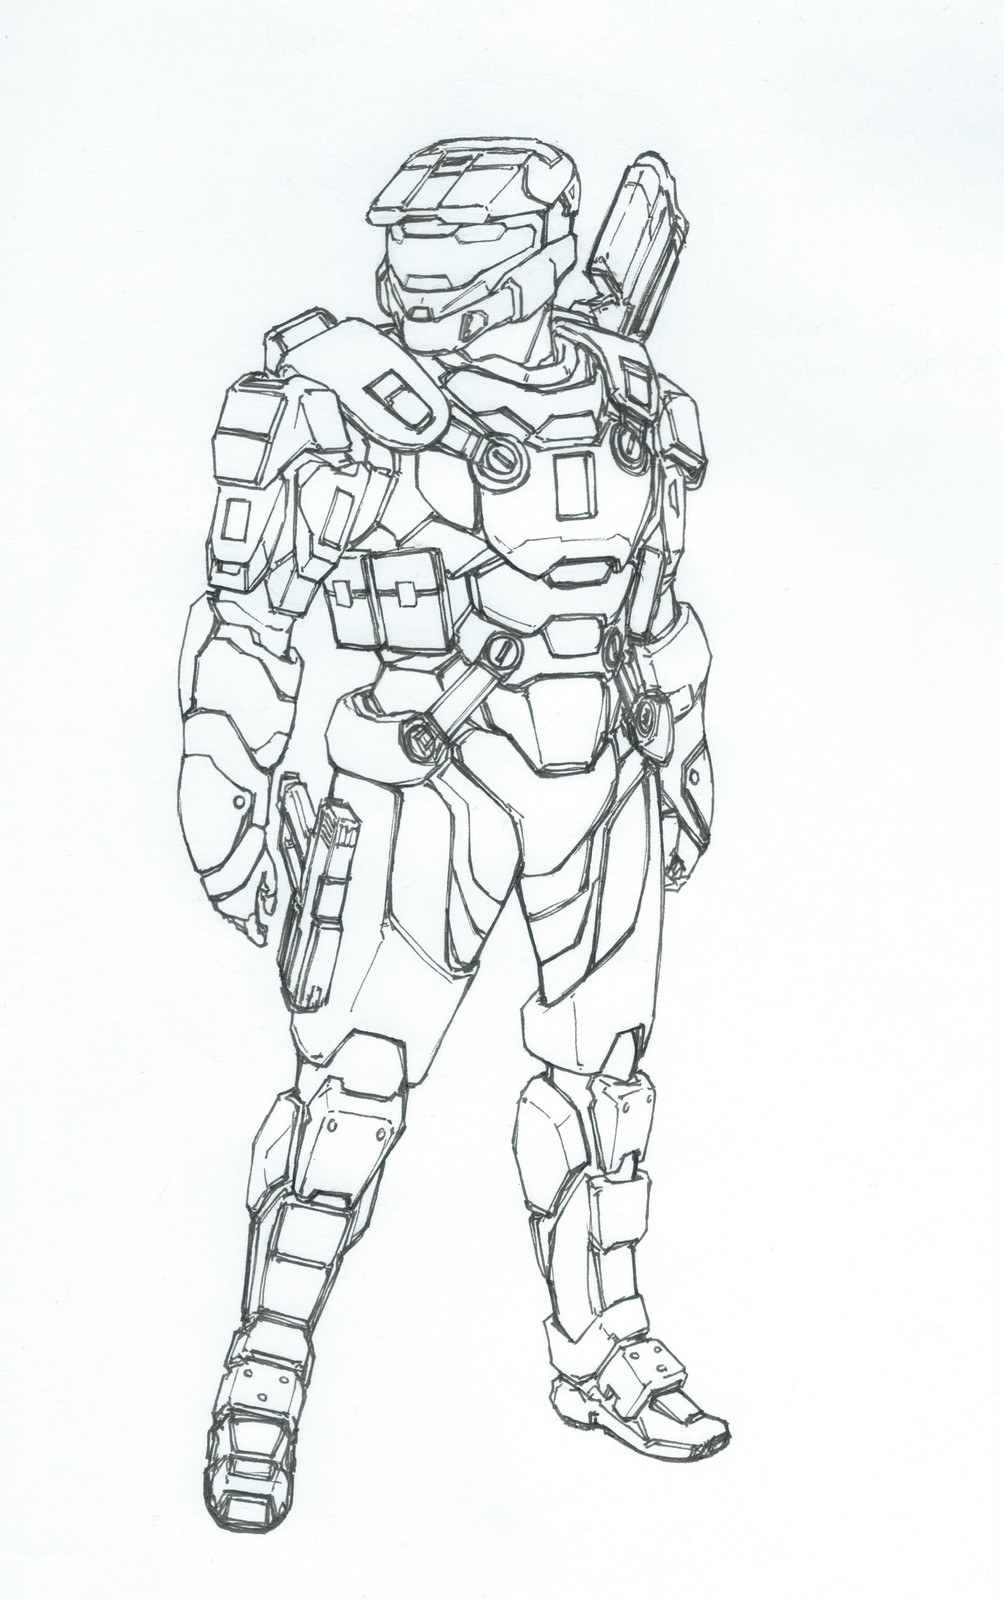 Thomas Chen - Spartan SPI Armor